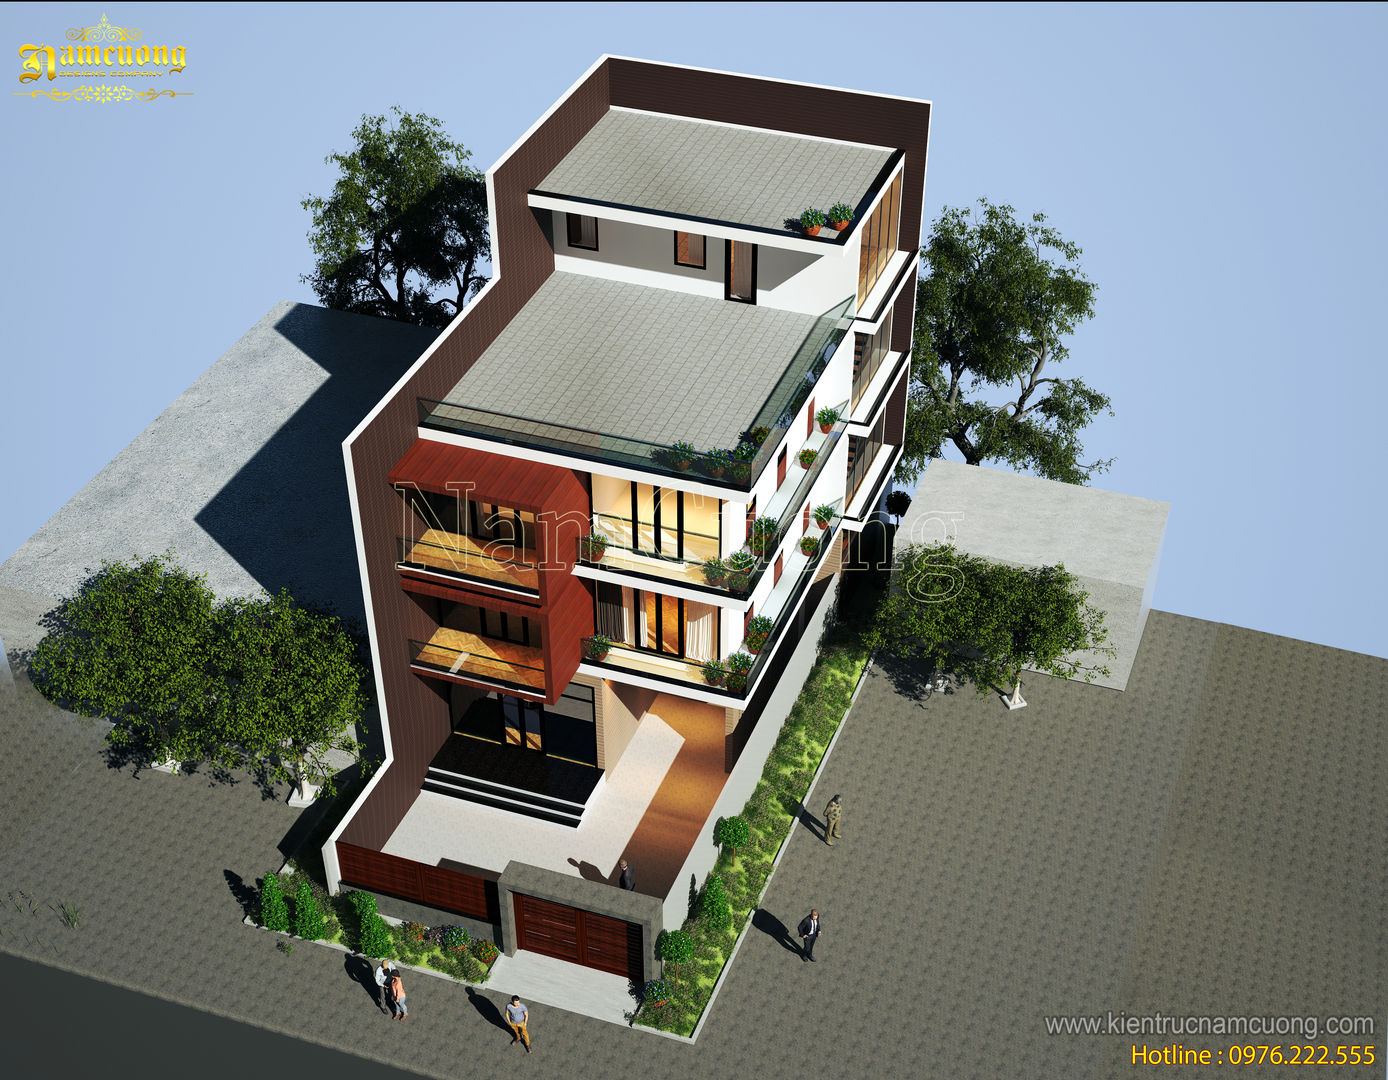 NamCuong design company, Công ty Cổ phần tư vấn thiết kế xây dựng Nam Cường Công ty Cổ phần tư vấn thiết kế xây dựng Nam Cường Modern home